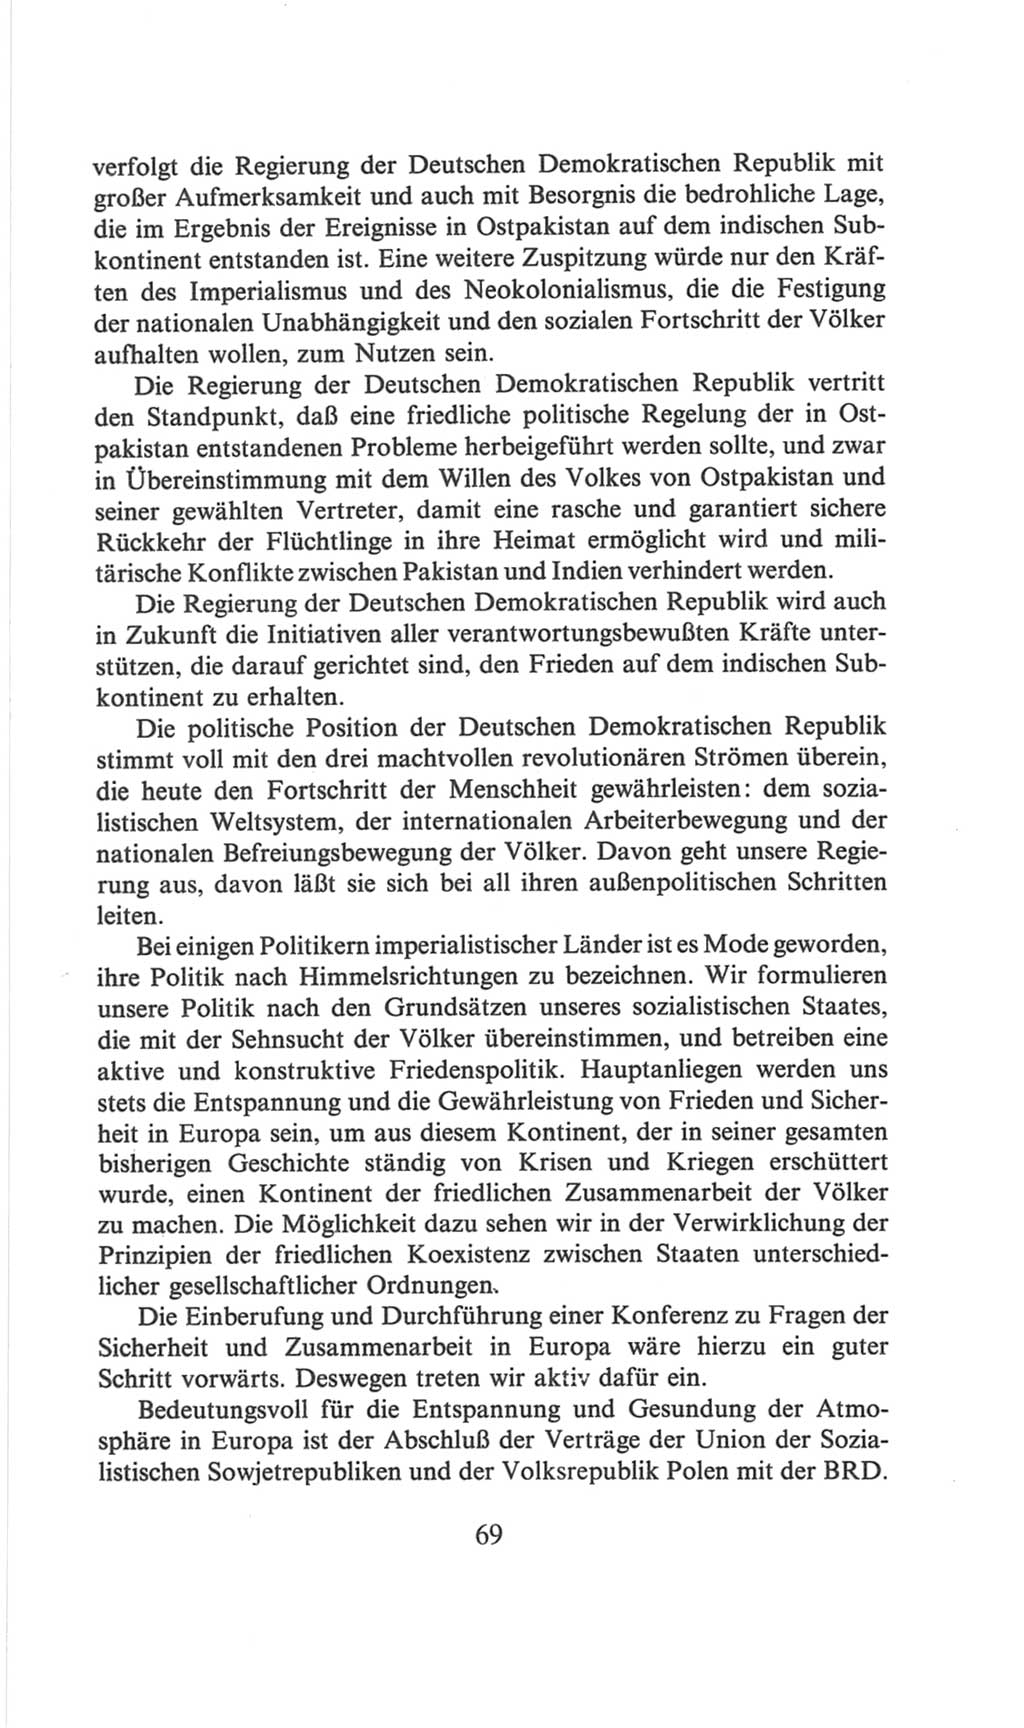 Volkskammer (VK) der Deutschen Demokratischen Republik (DDR), 6. Wahlperiode 1971-1976, Seite 69 (VK. DDR 6. WP. 1971-1976, S. 69)